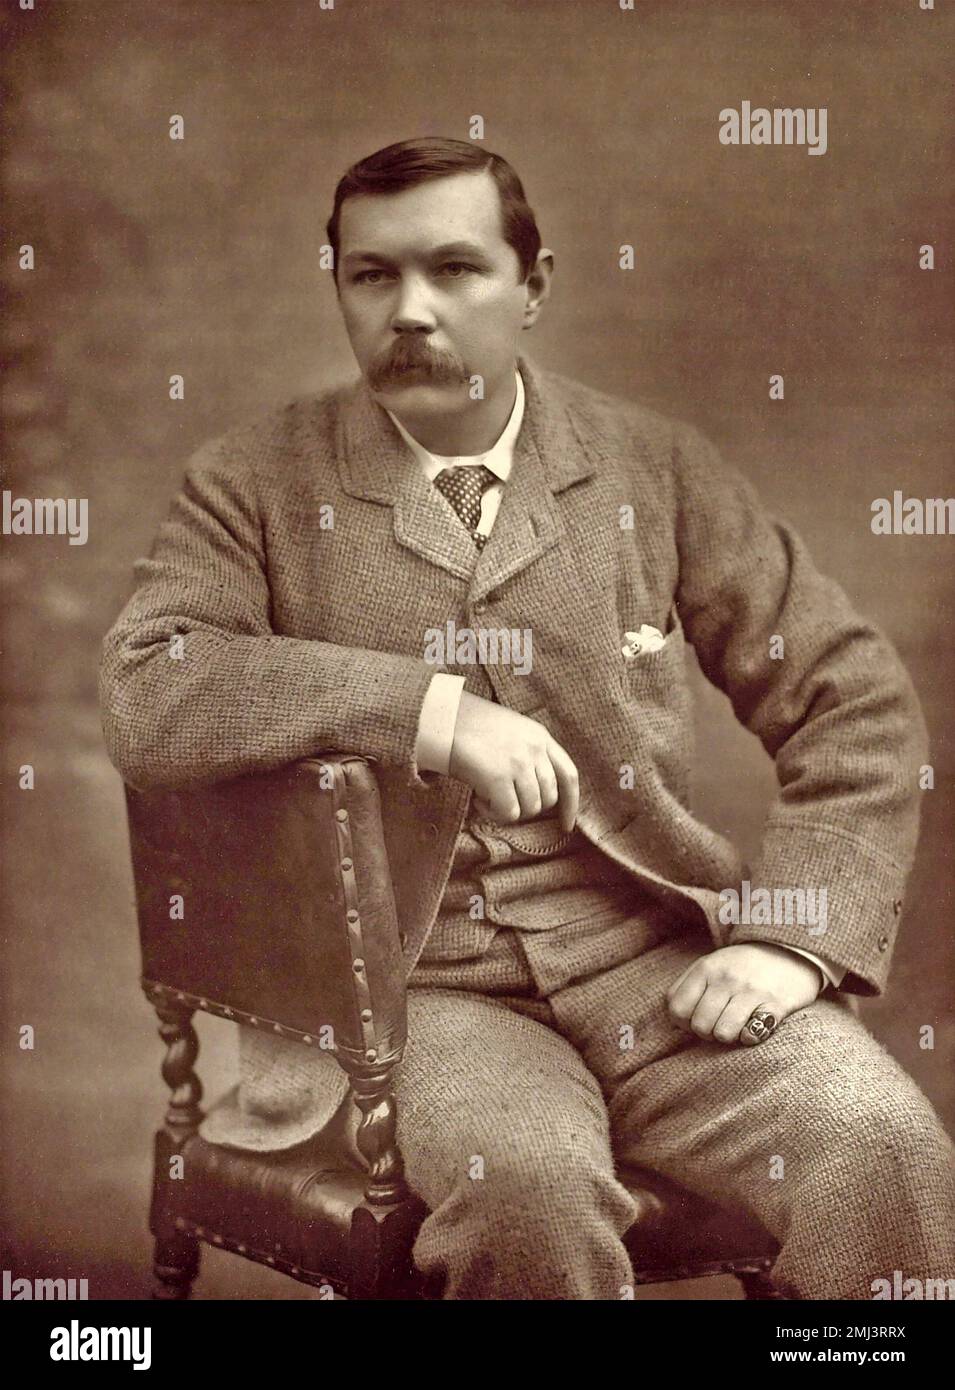 ARTHUR CONAN DOYLE (1859-1930) Scorrosh Autor und Arzt, Schöpfer von Sherlock Holmes. Foto: Herbert Barraud, 1893 Stockfoto